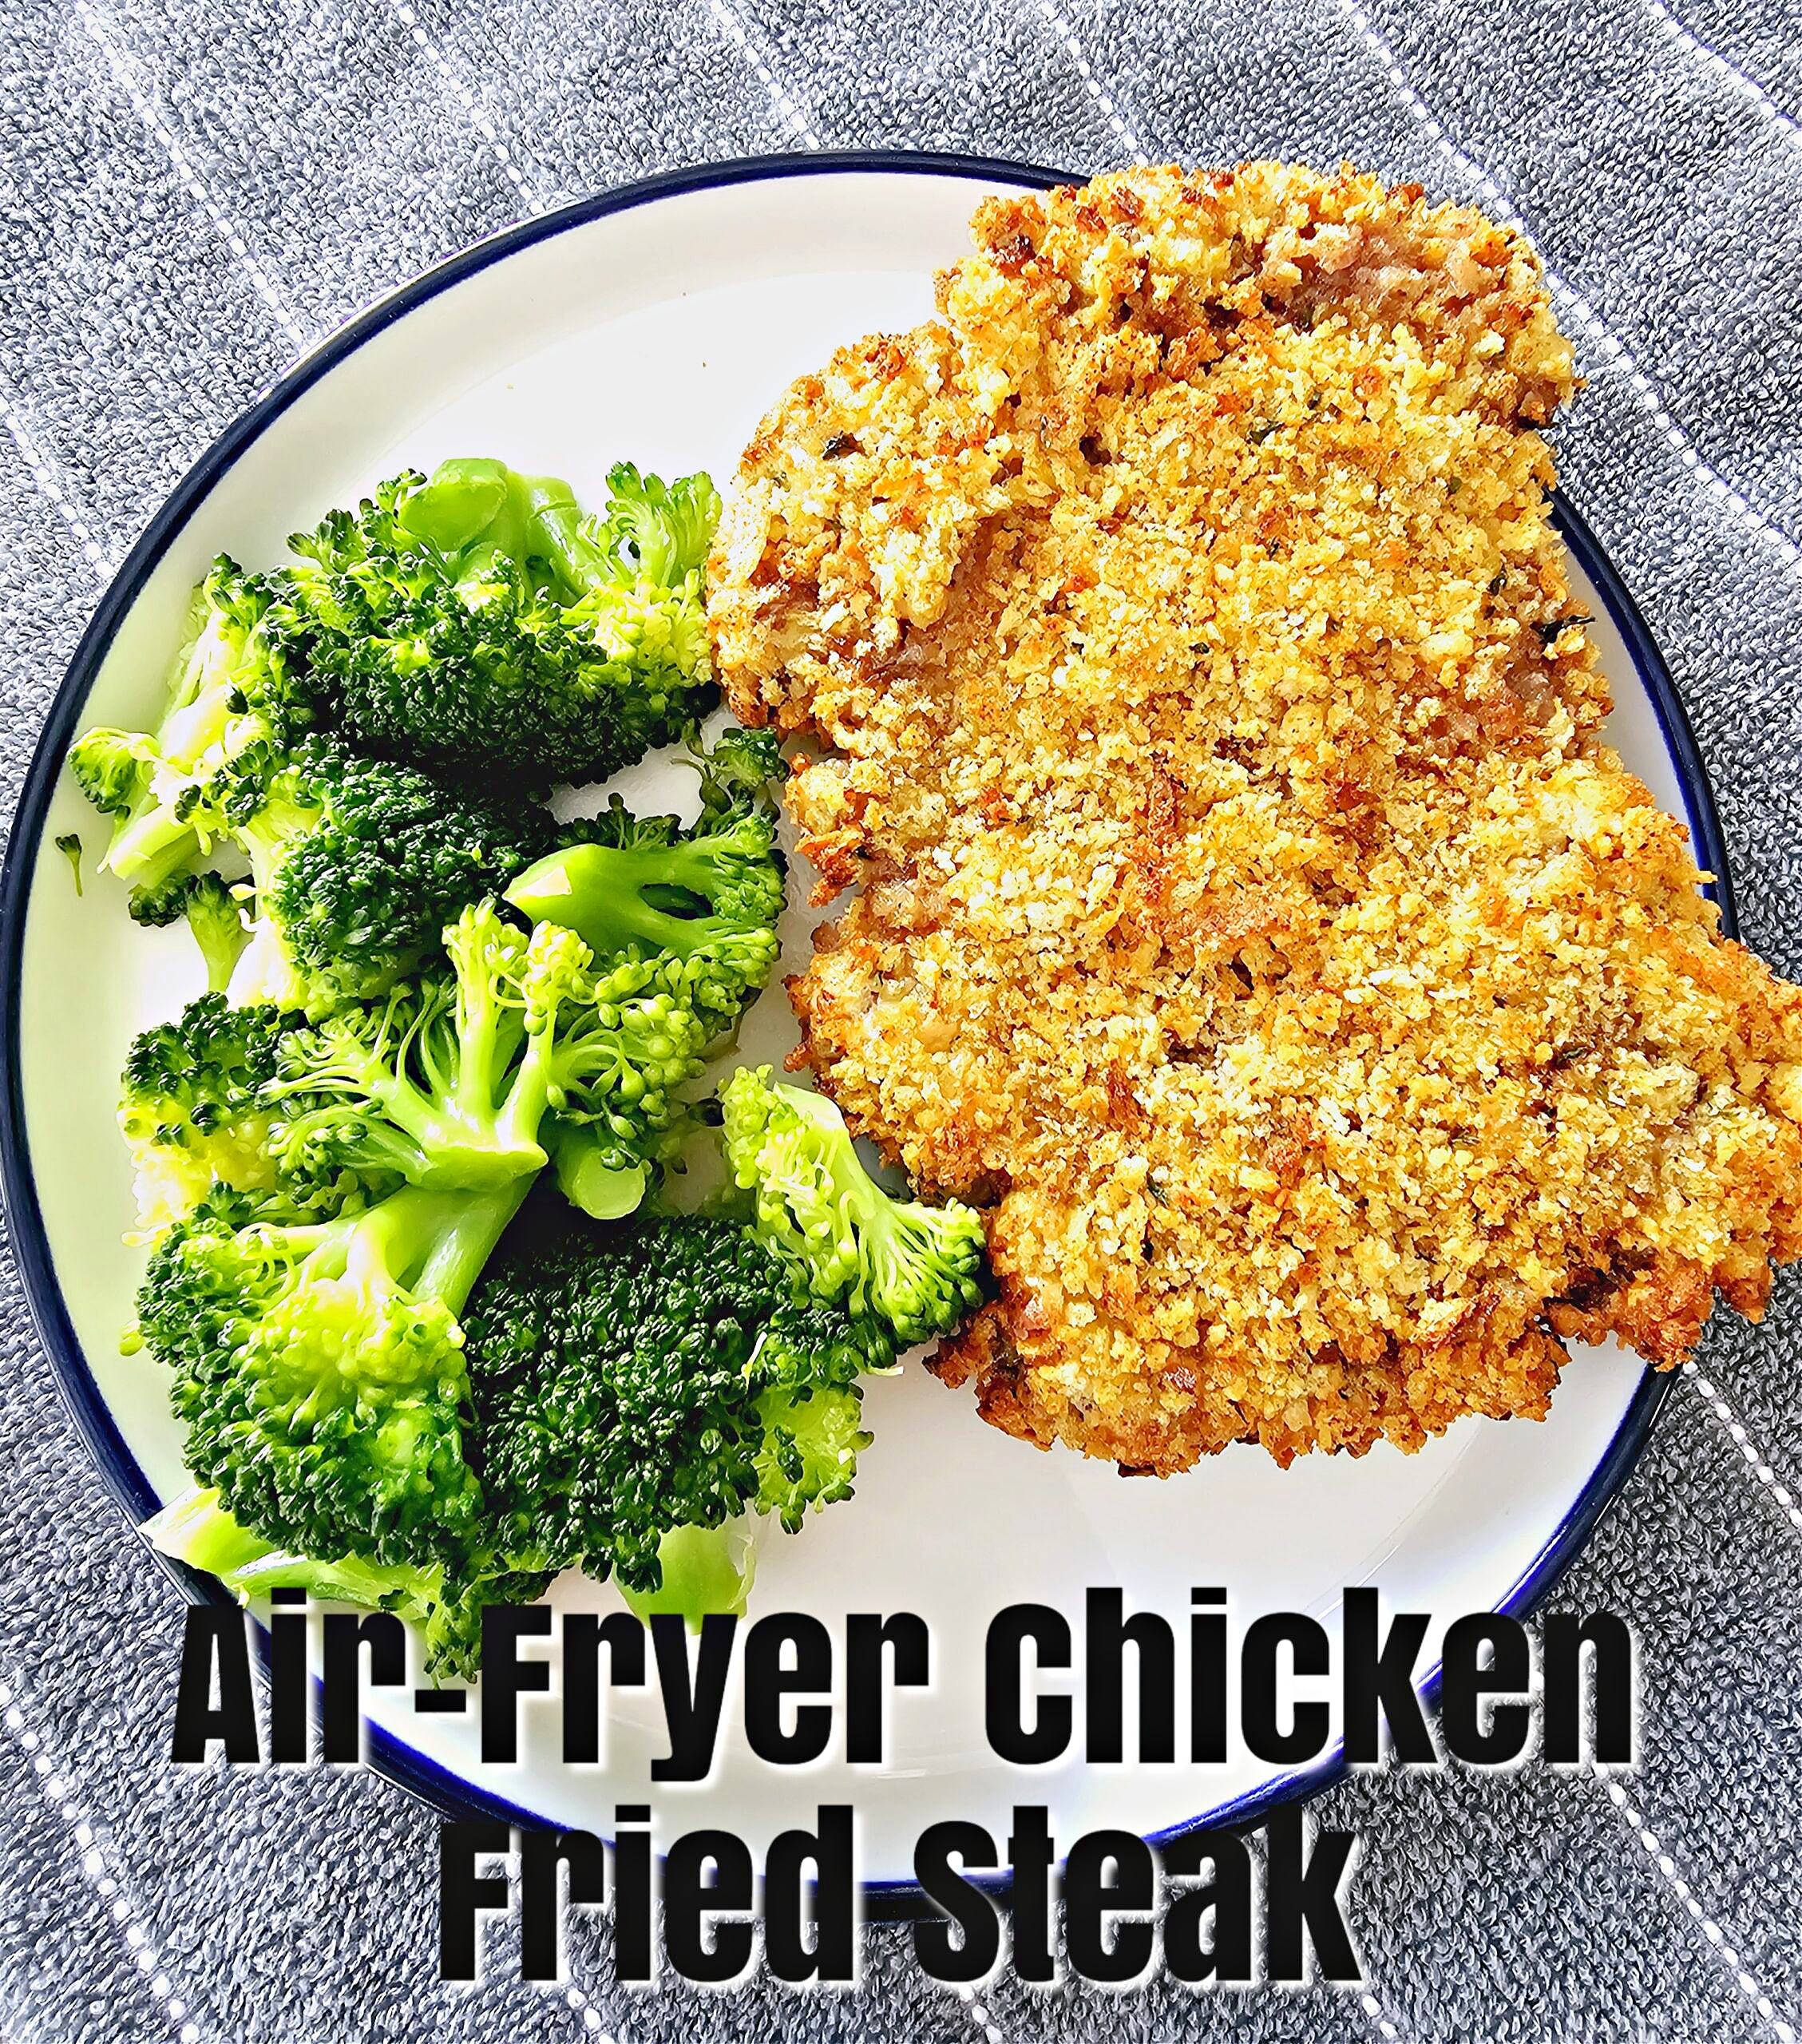 Air-Fryer Chicken Fried Steak #airfryer #beef #chickenfriedsteak #dinner #familydinner #weeknightdinner